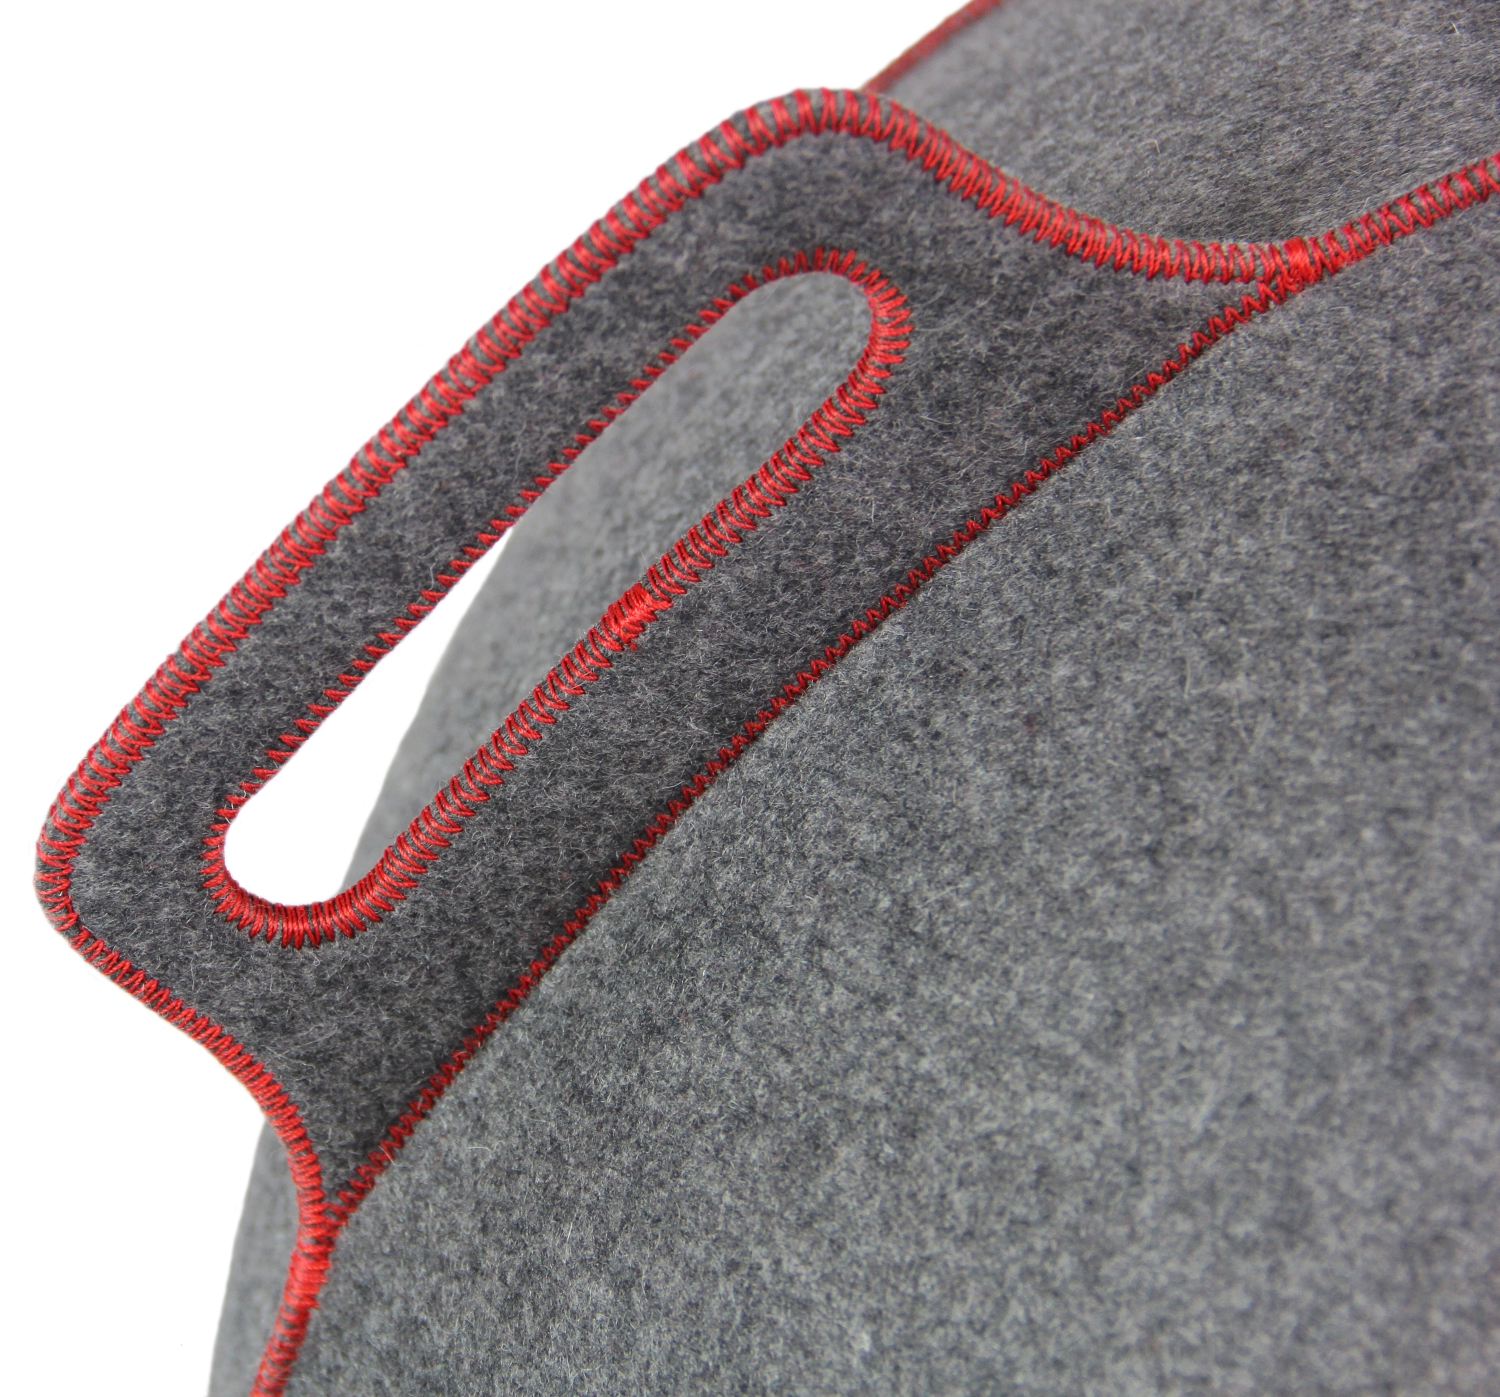 VLUV VELT hochwertiger Filz-Sitzball 60-65cm grau/rot ergonomisches Design-Sitzmöbel mit Tragegriff